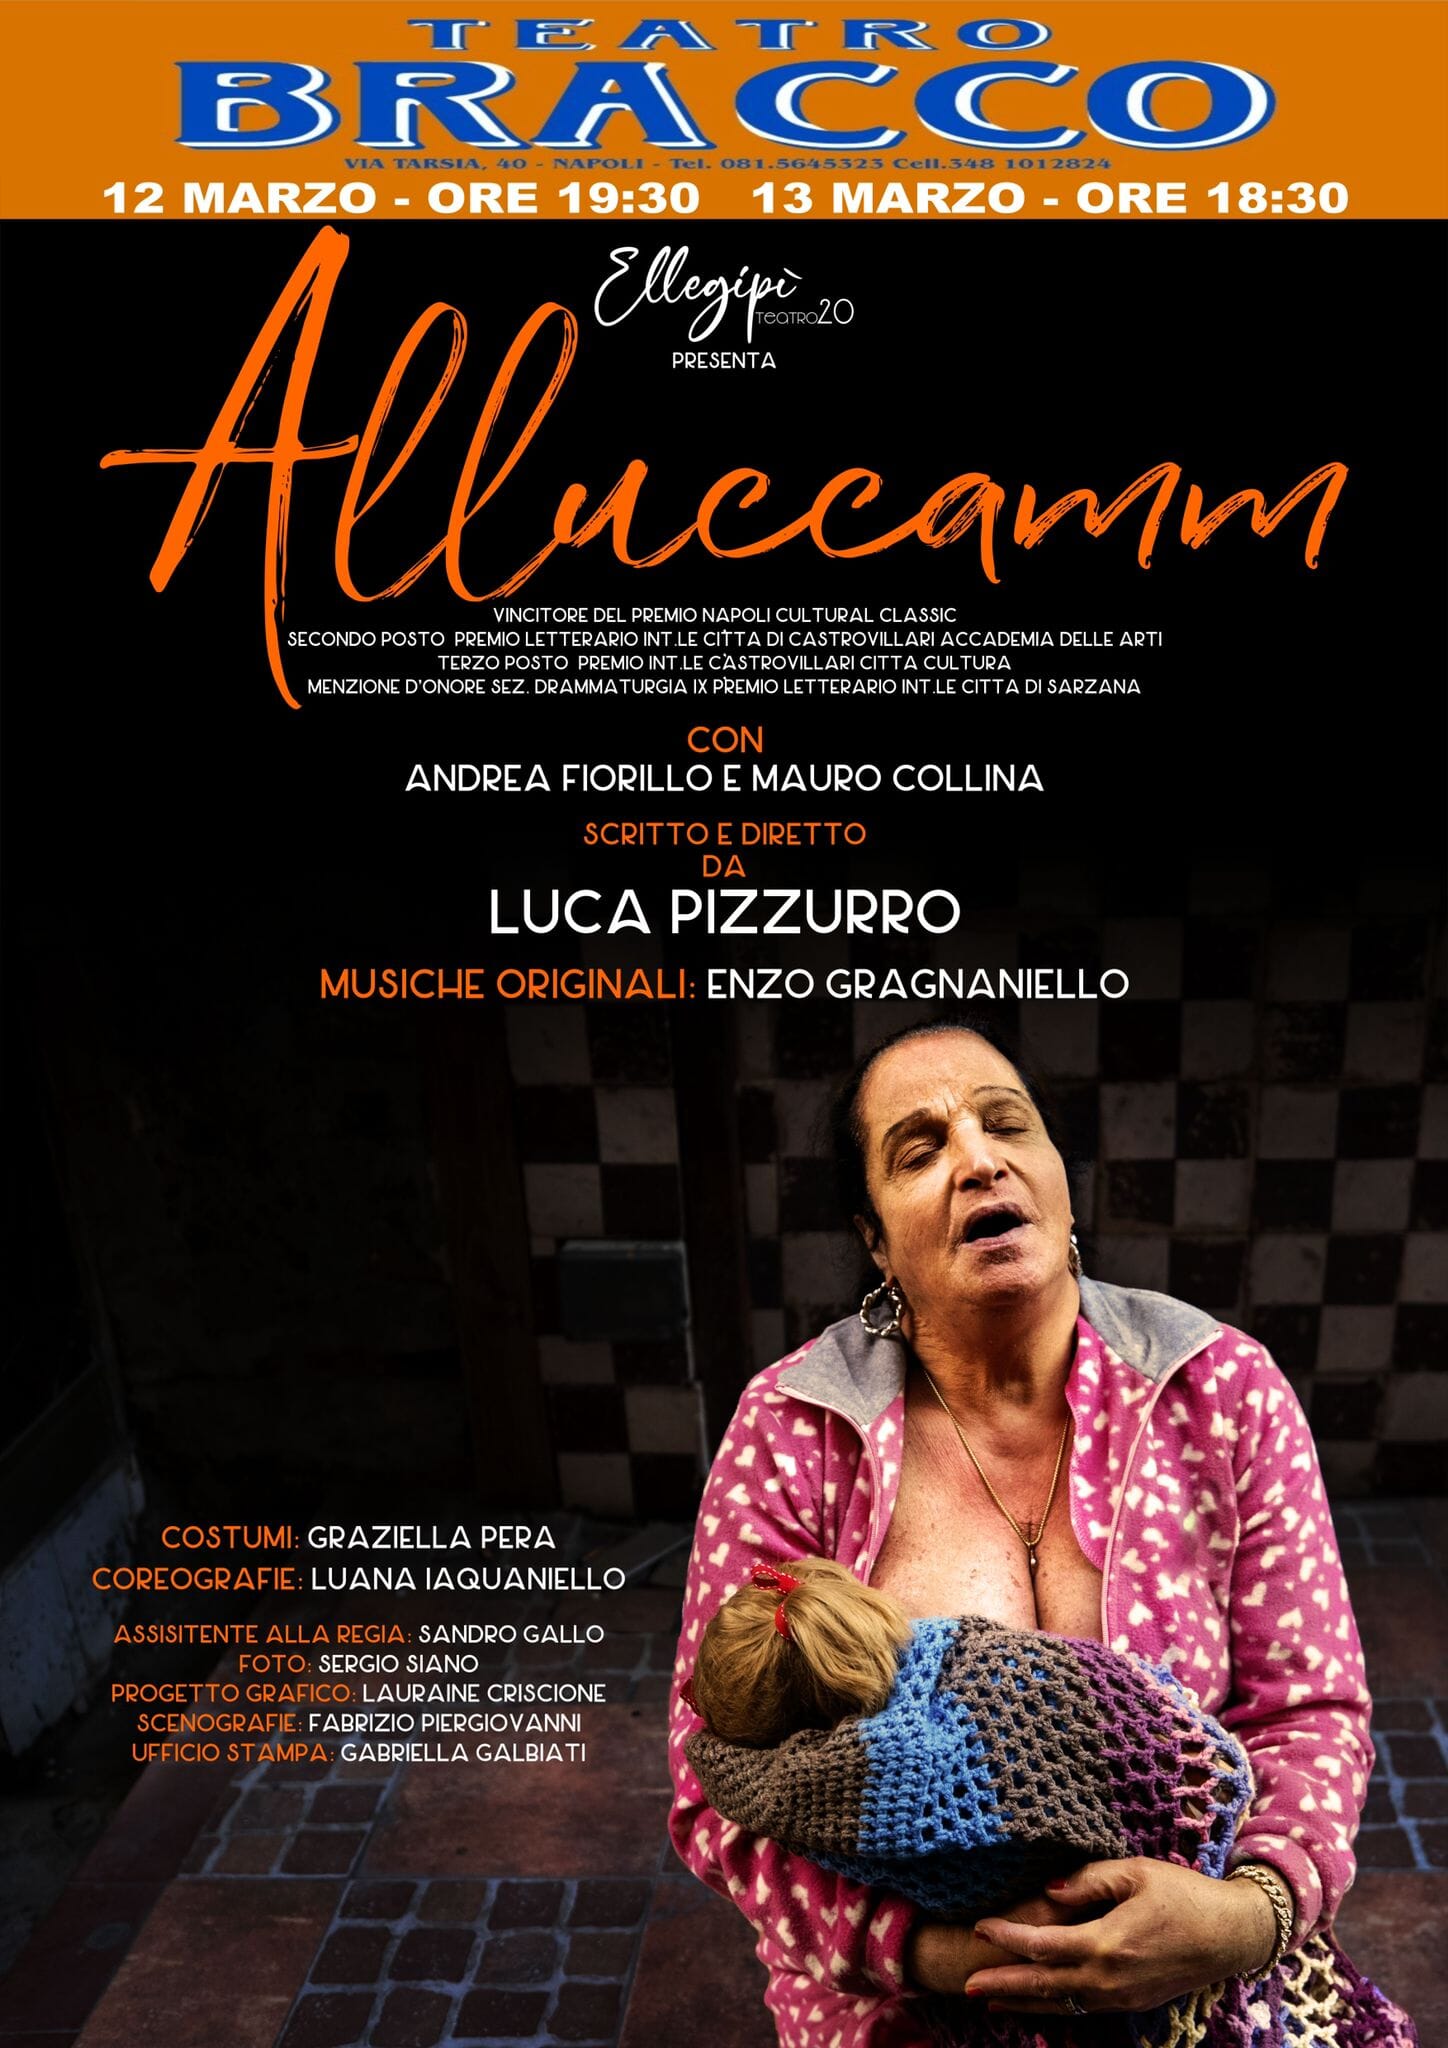 Al teatro Bracco lo spettacolo “Alluccamm” di Pizzurro con le musiche di Gragnaniello